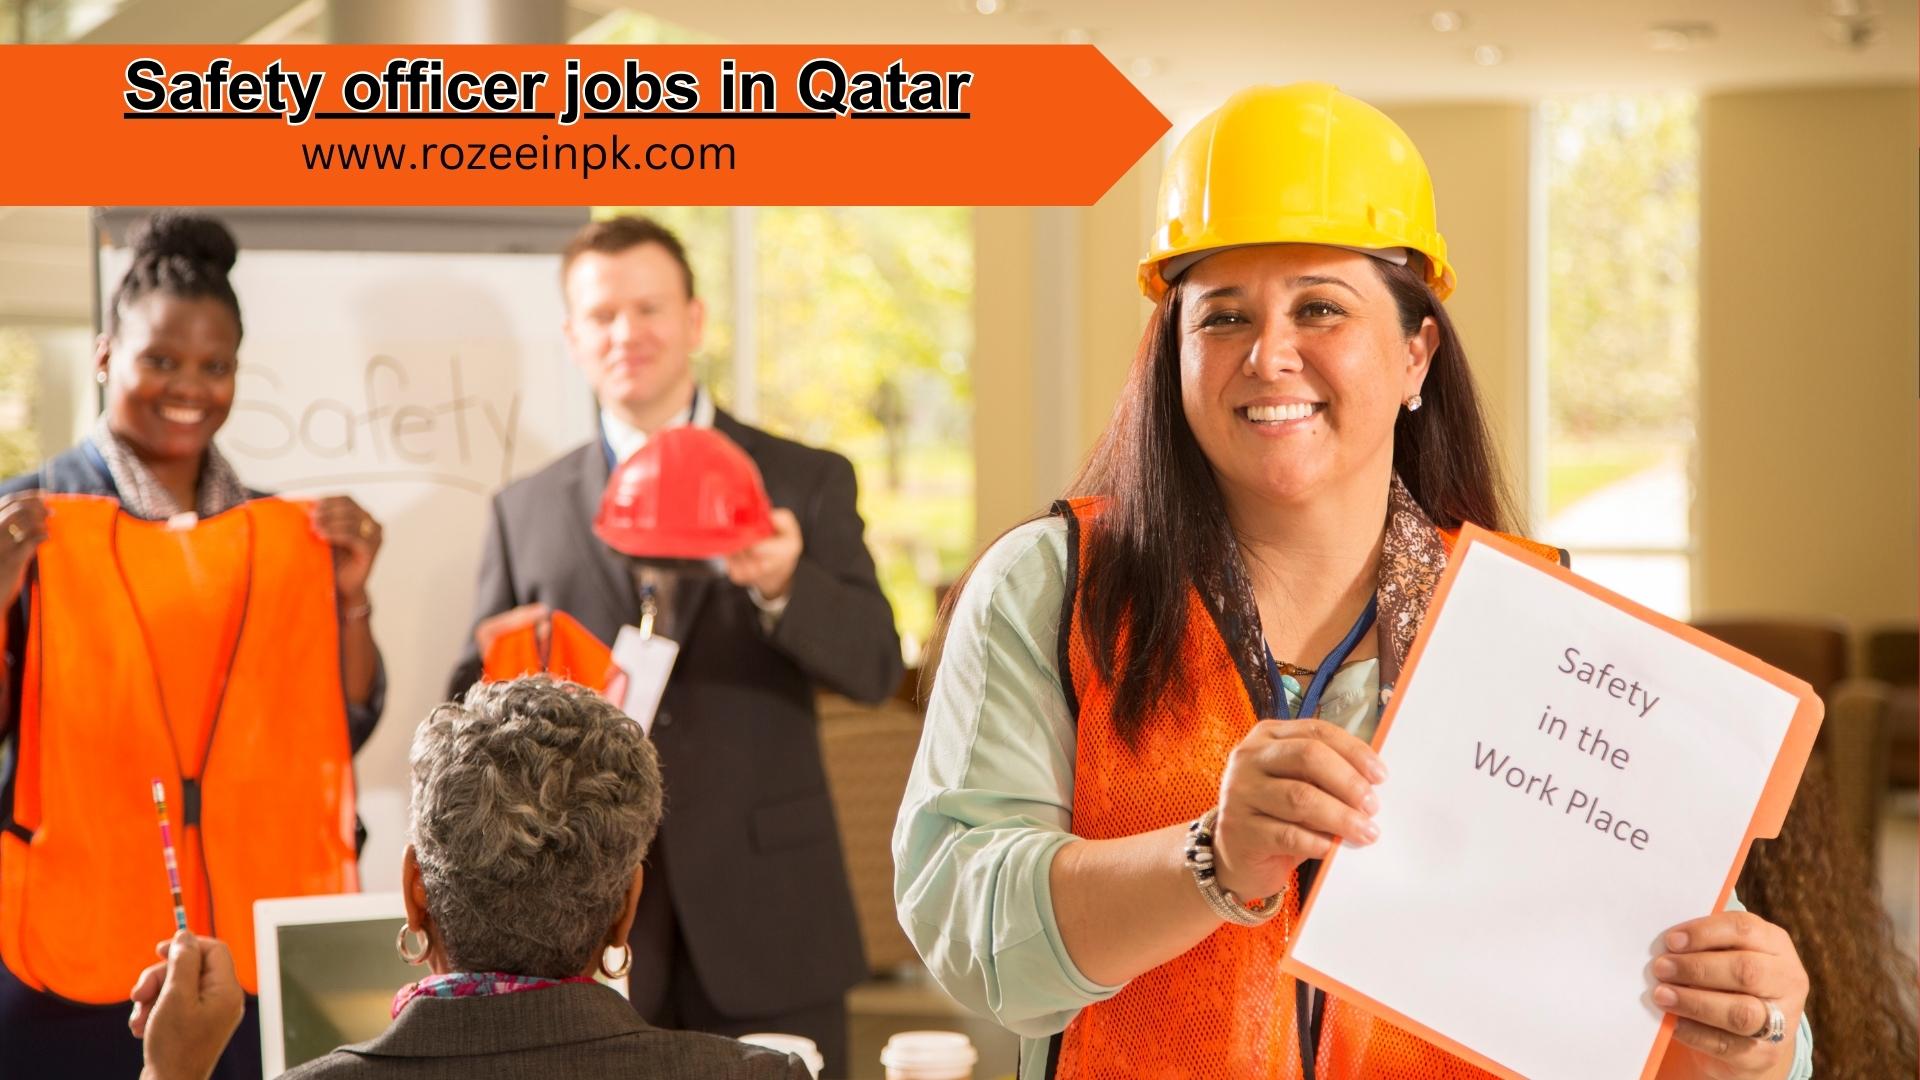 Safety officer jobs in Qatar